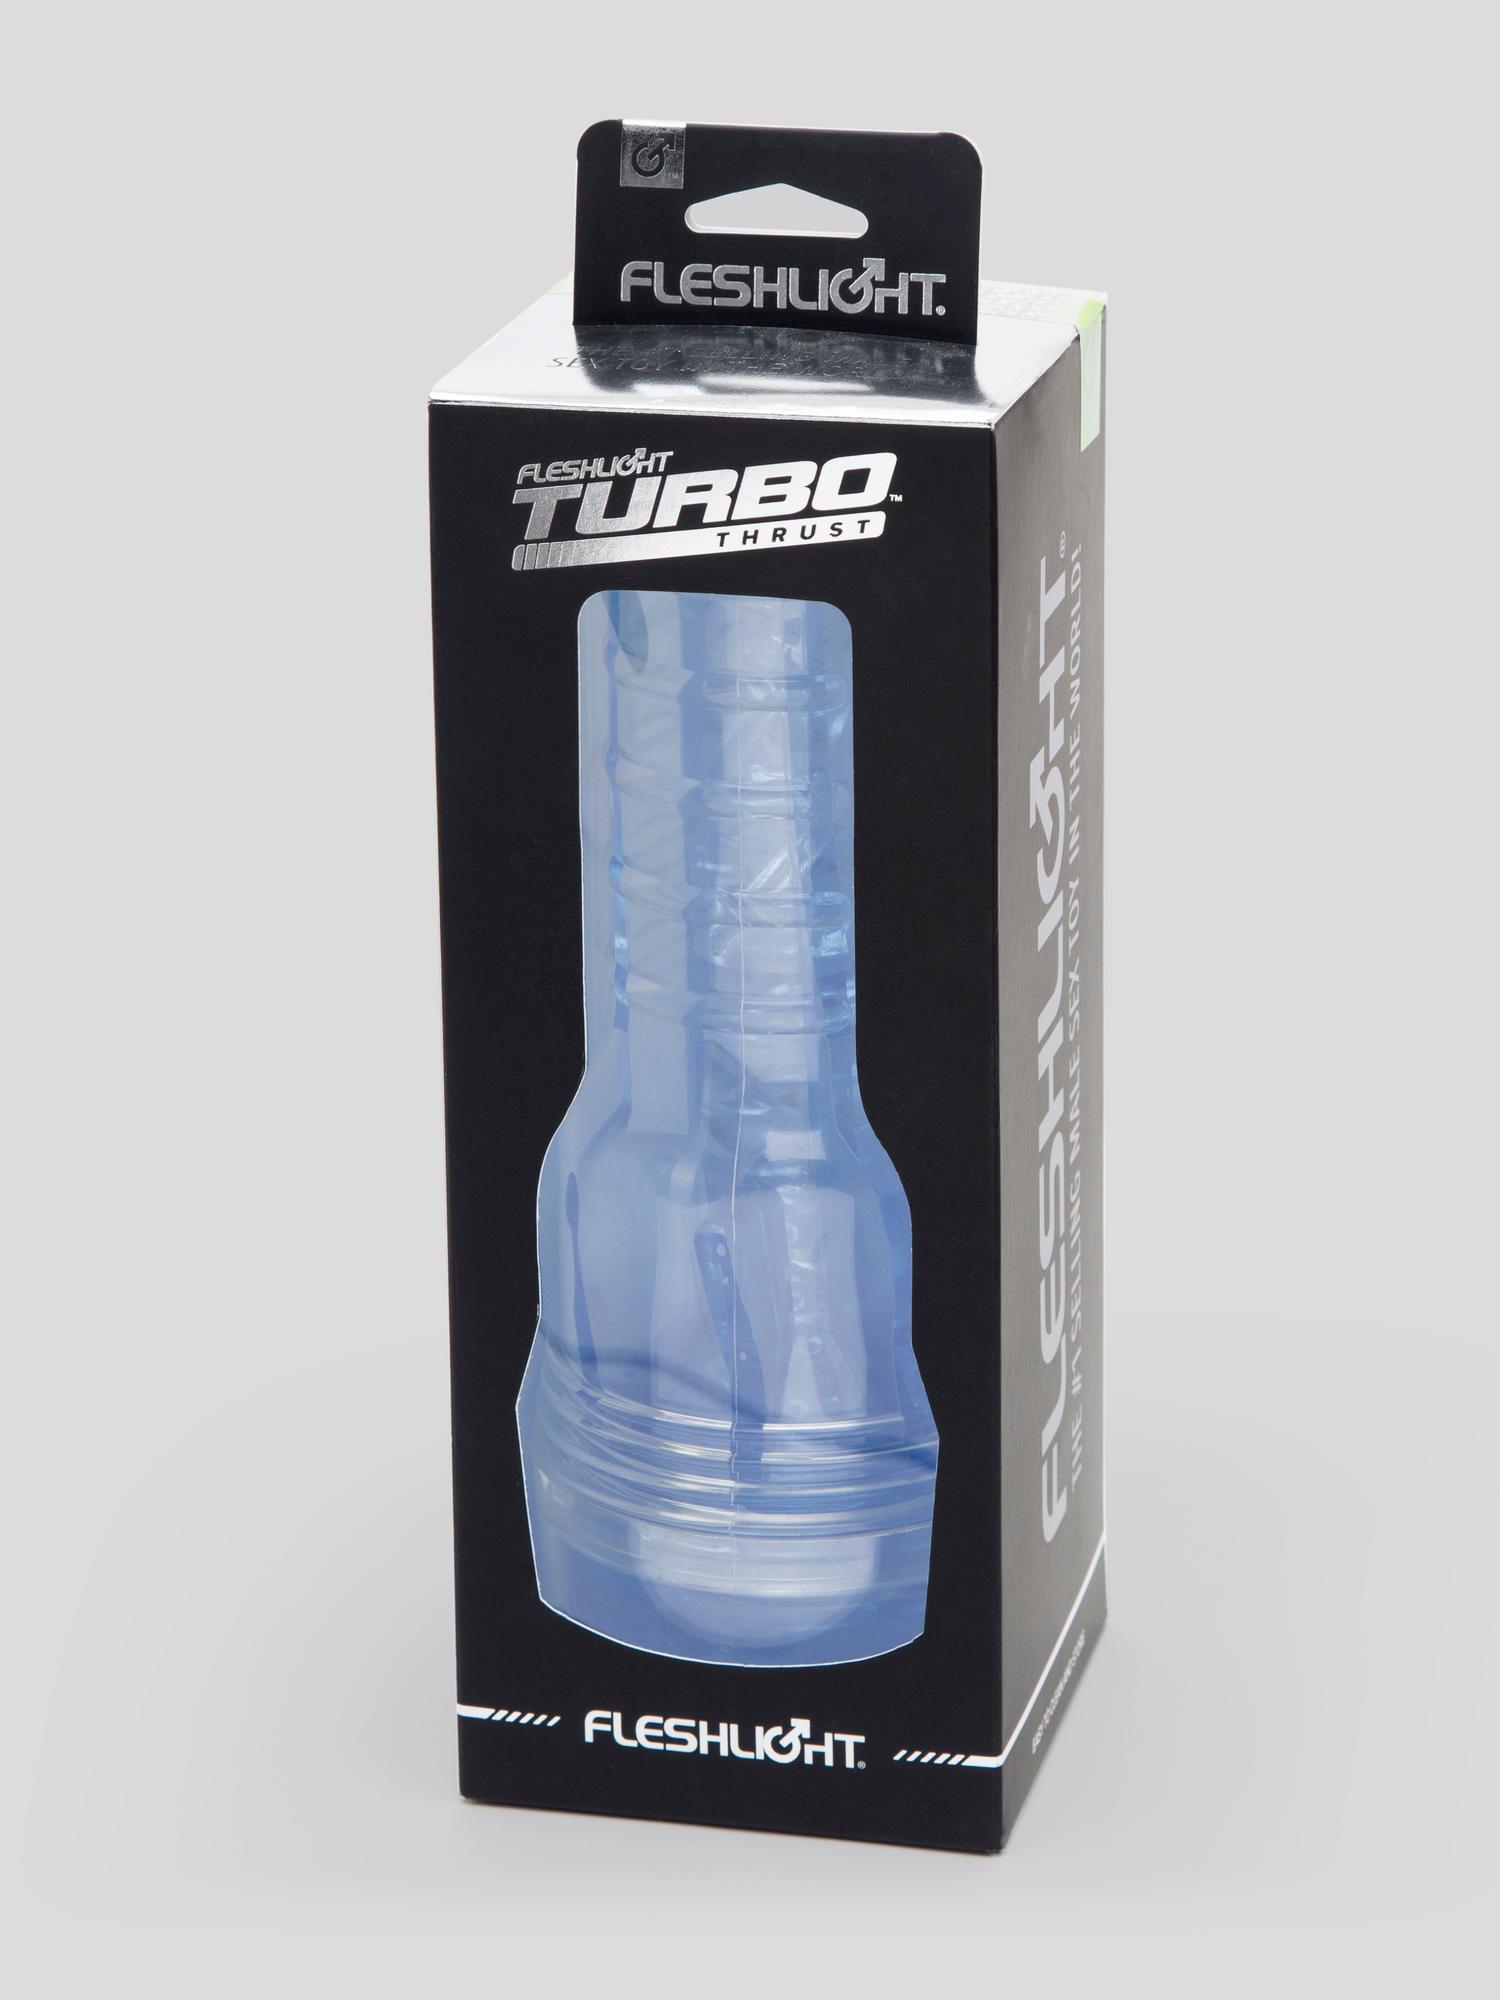 Fleshlight Turbo Thrust. Slide 12